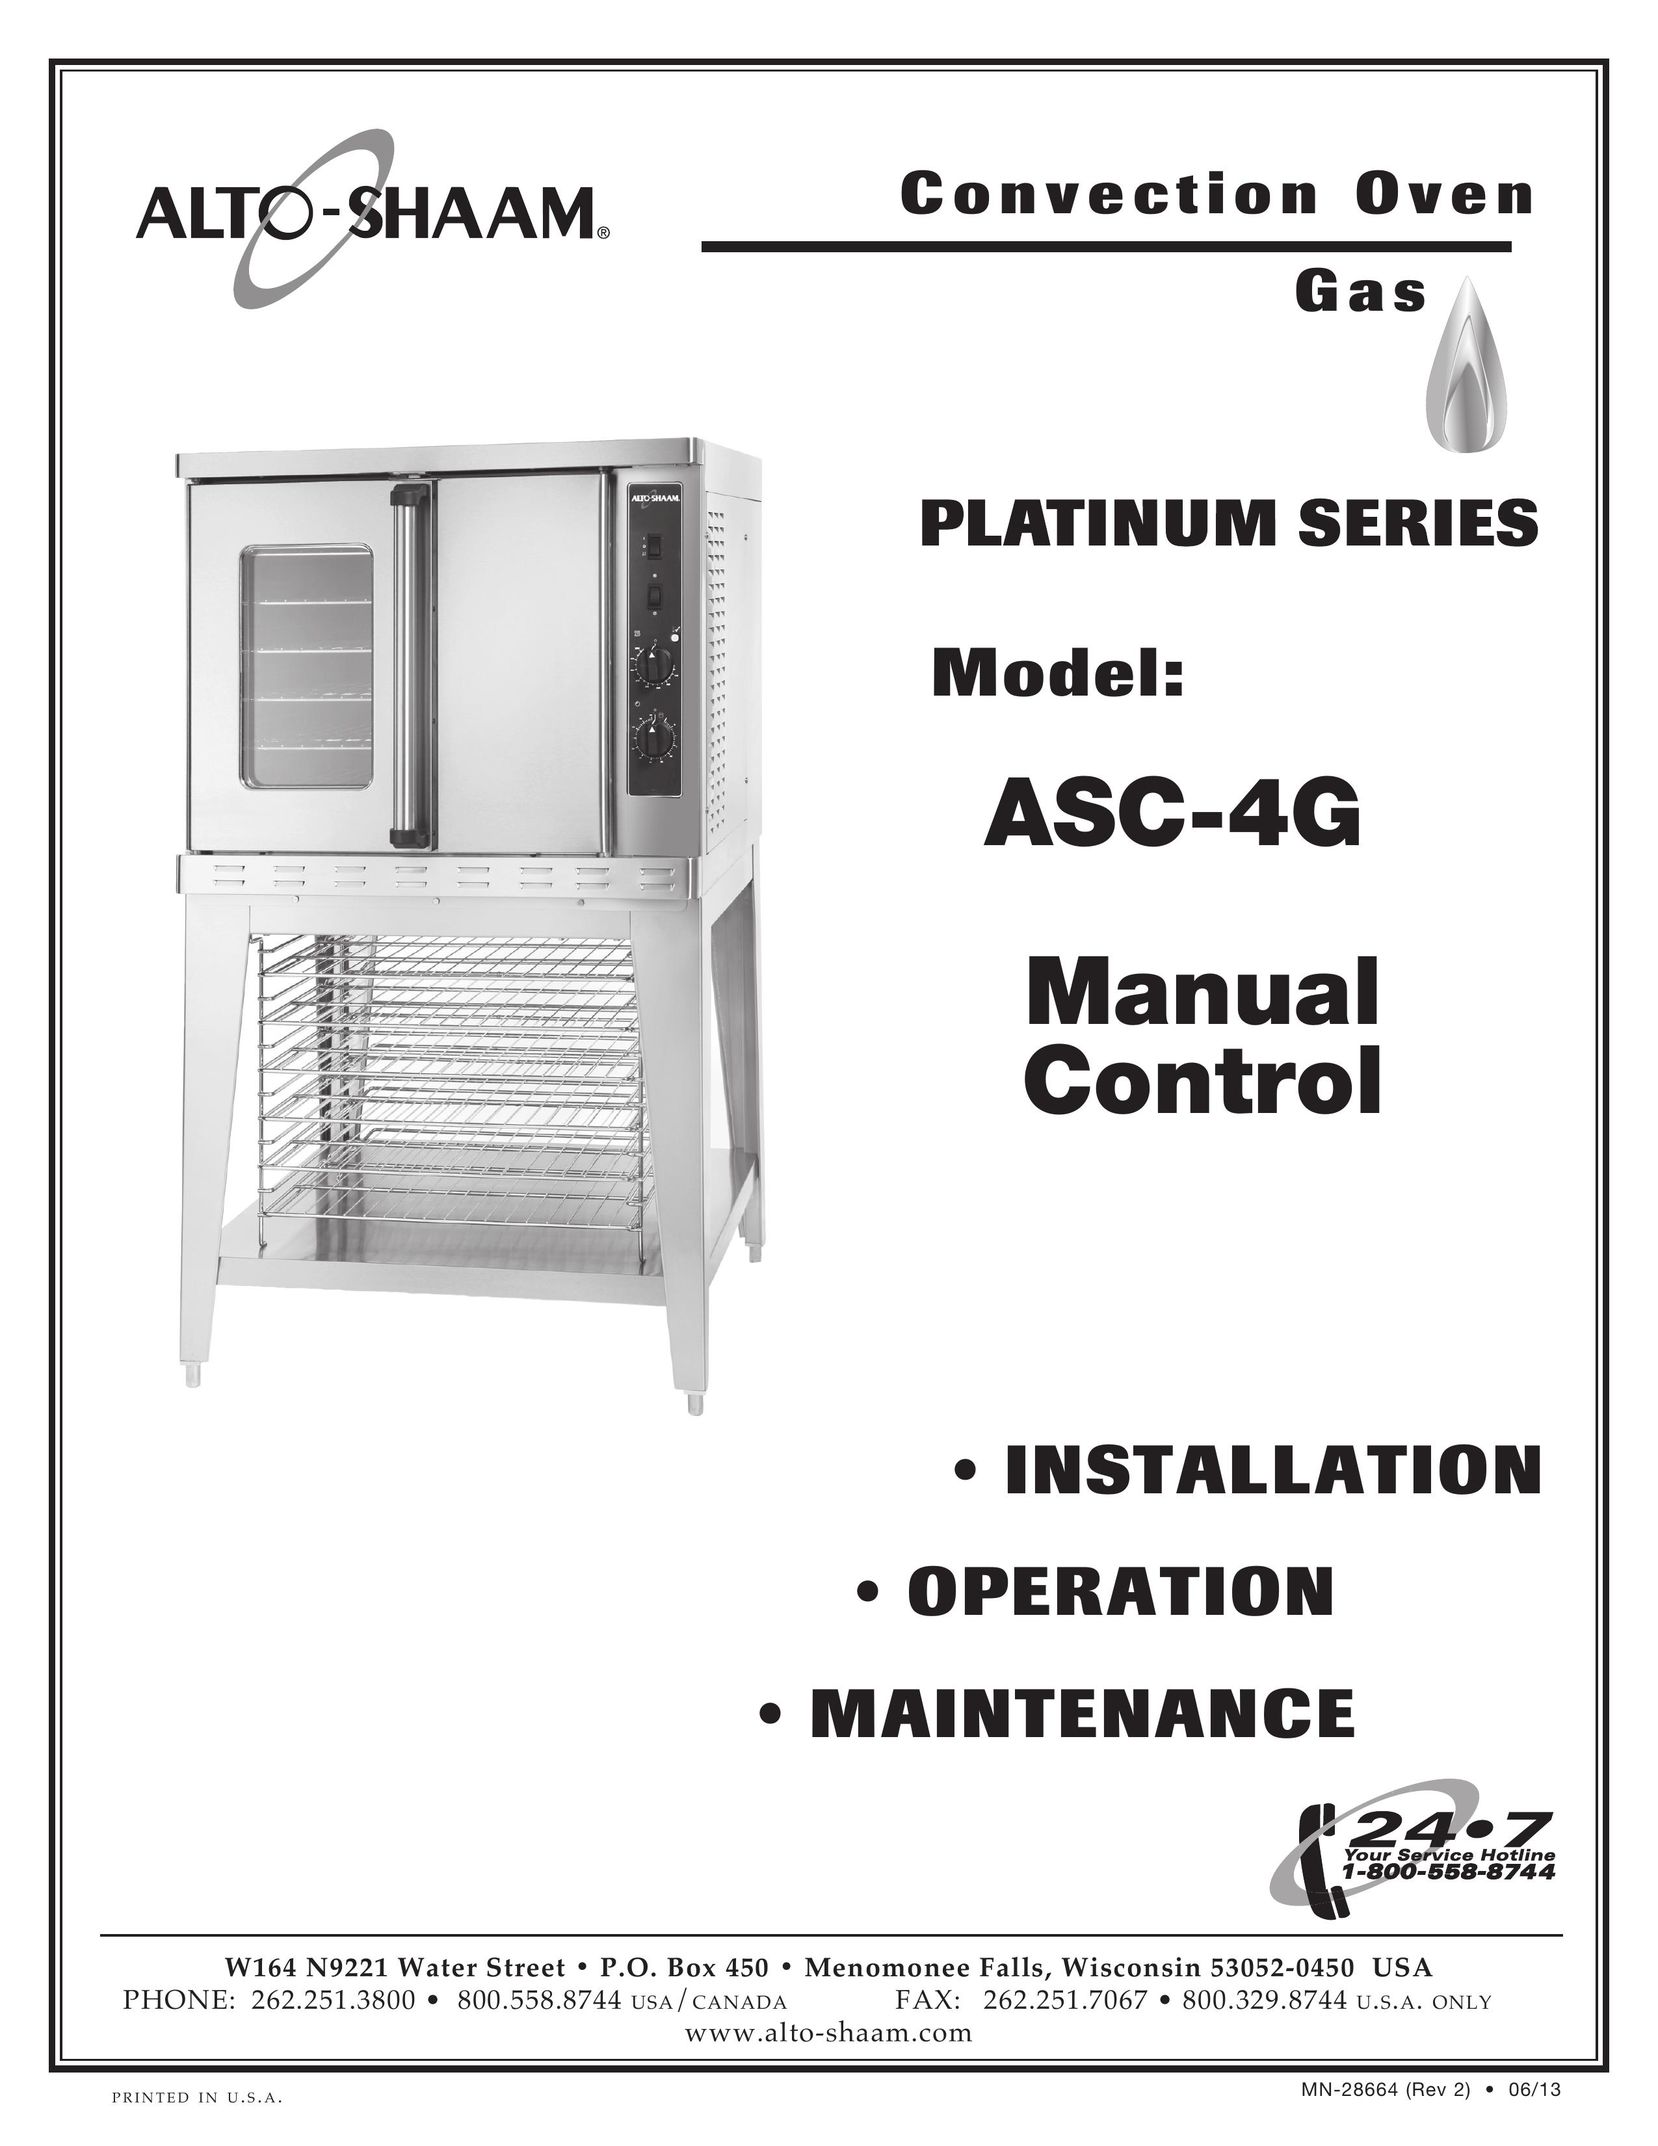 Alto-Shaam ASC-4G Convection Oven User Manual